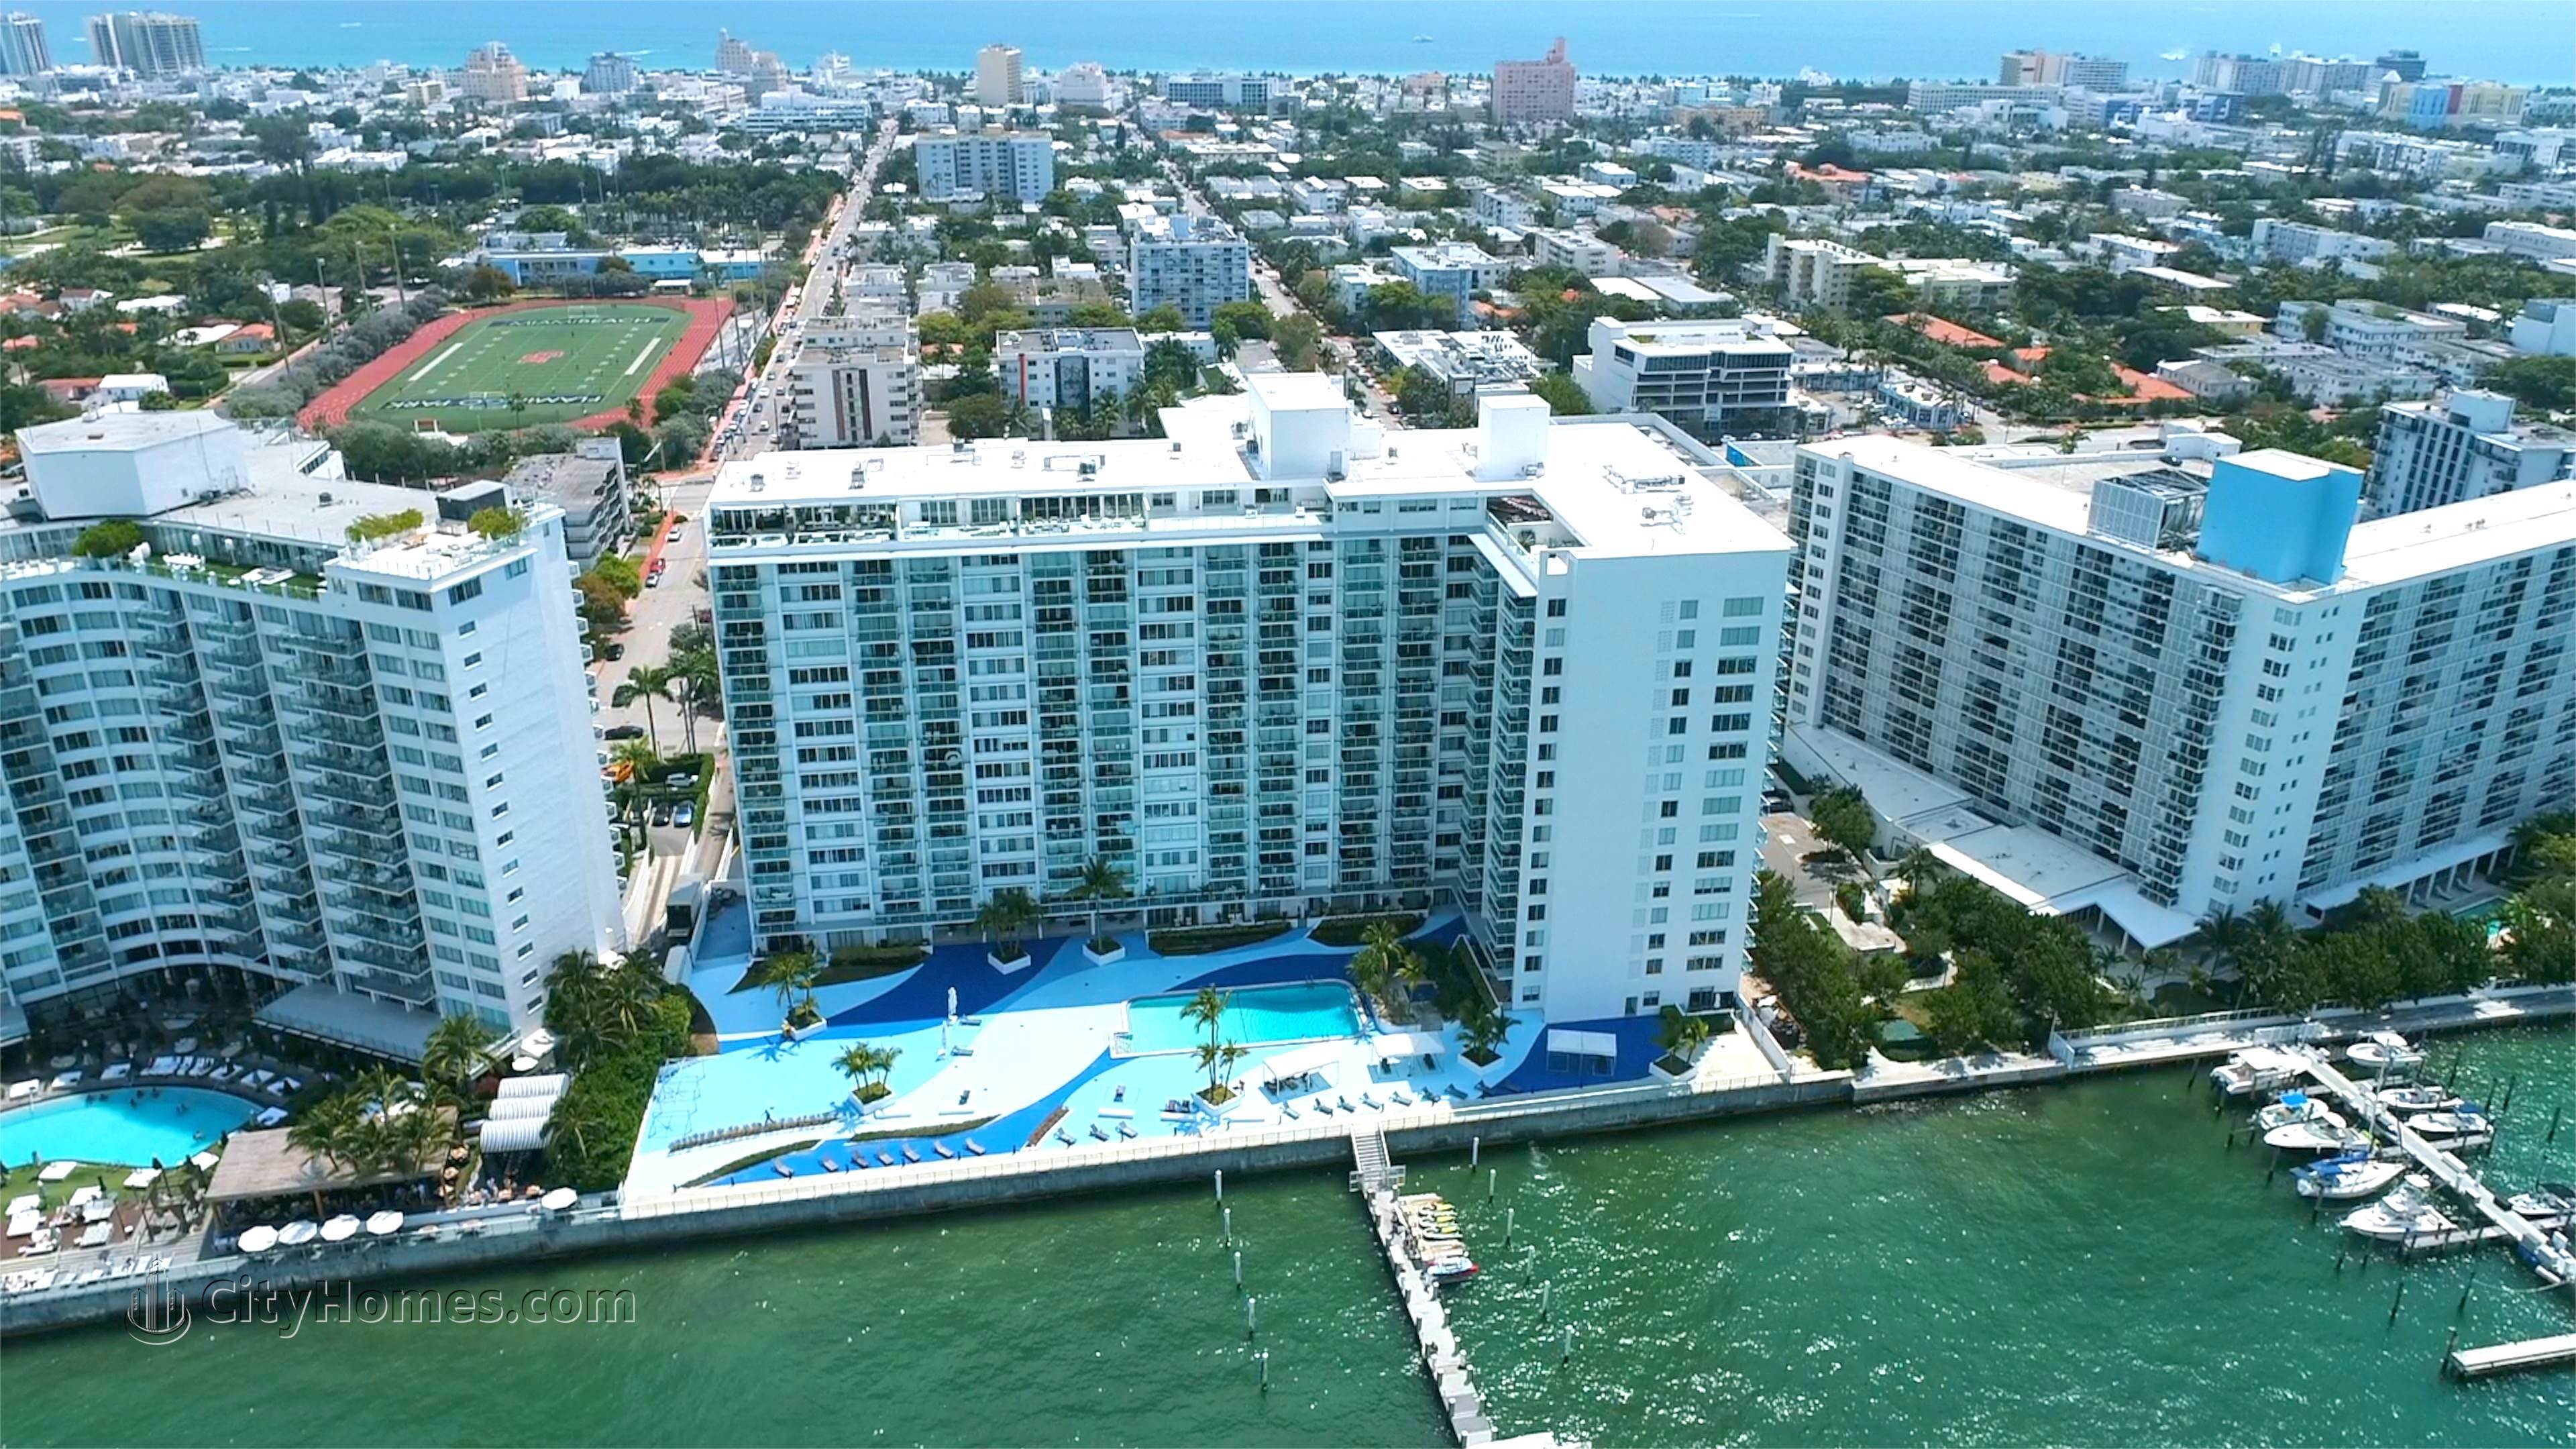 MIRADOR SOUTH edificio en 1000 West Avenue, West Avenue, Miami Beach, FL 33139